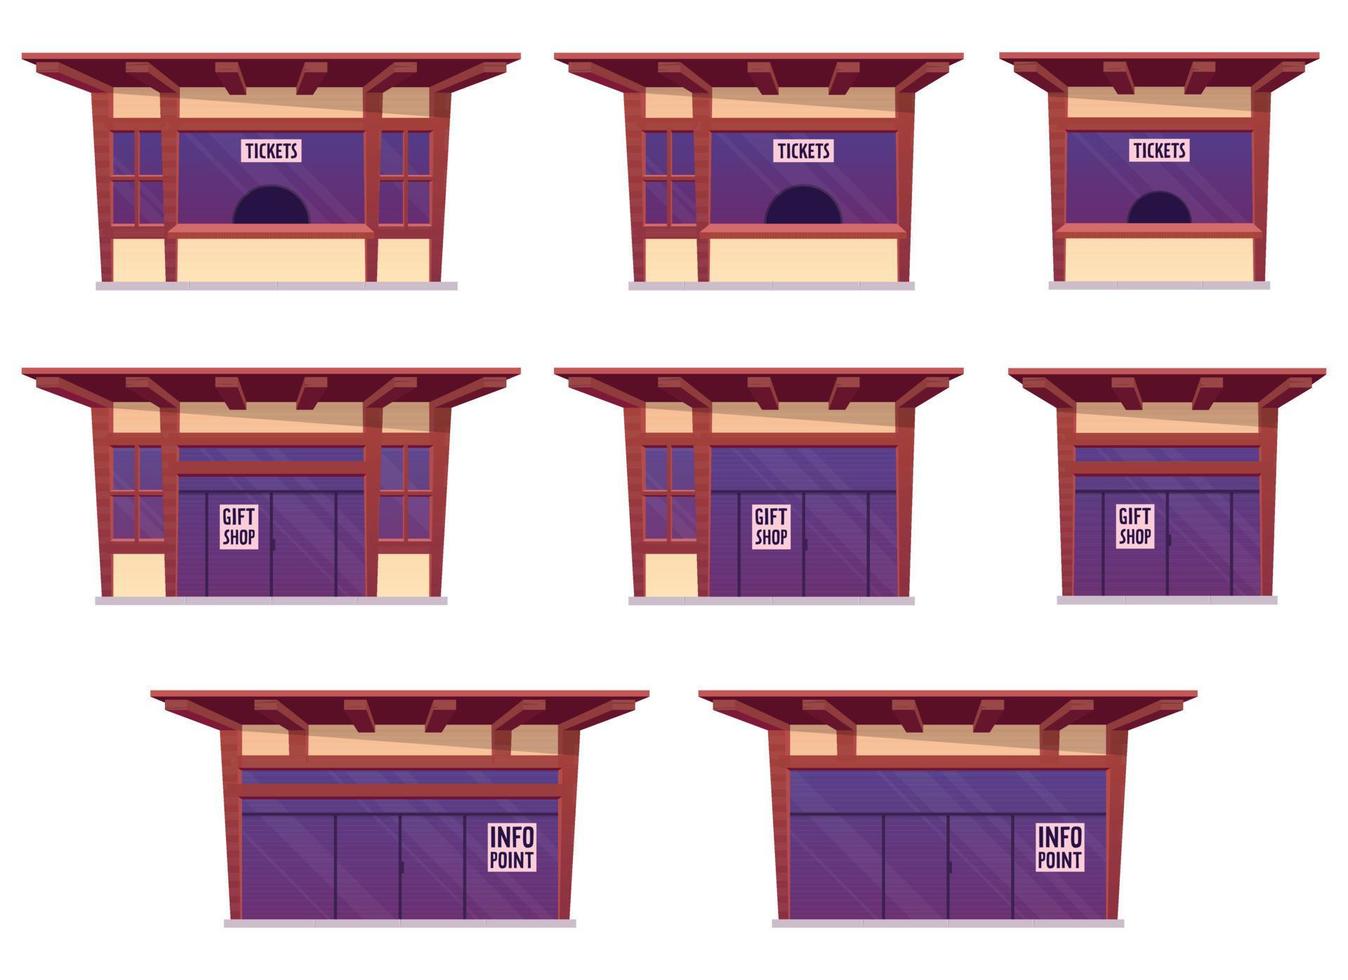 Entradas tienda y regalo tienda edificio en dibujos animados estilo vector ilustración aislado en blanco